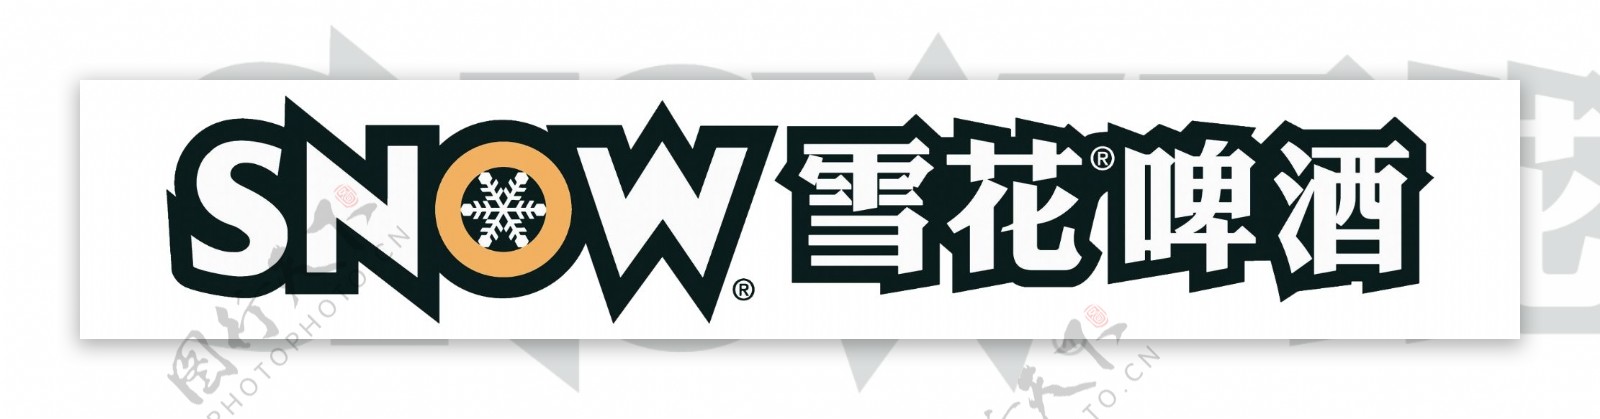 snow雪花啤酒logo图片